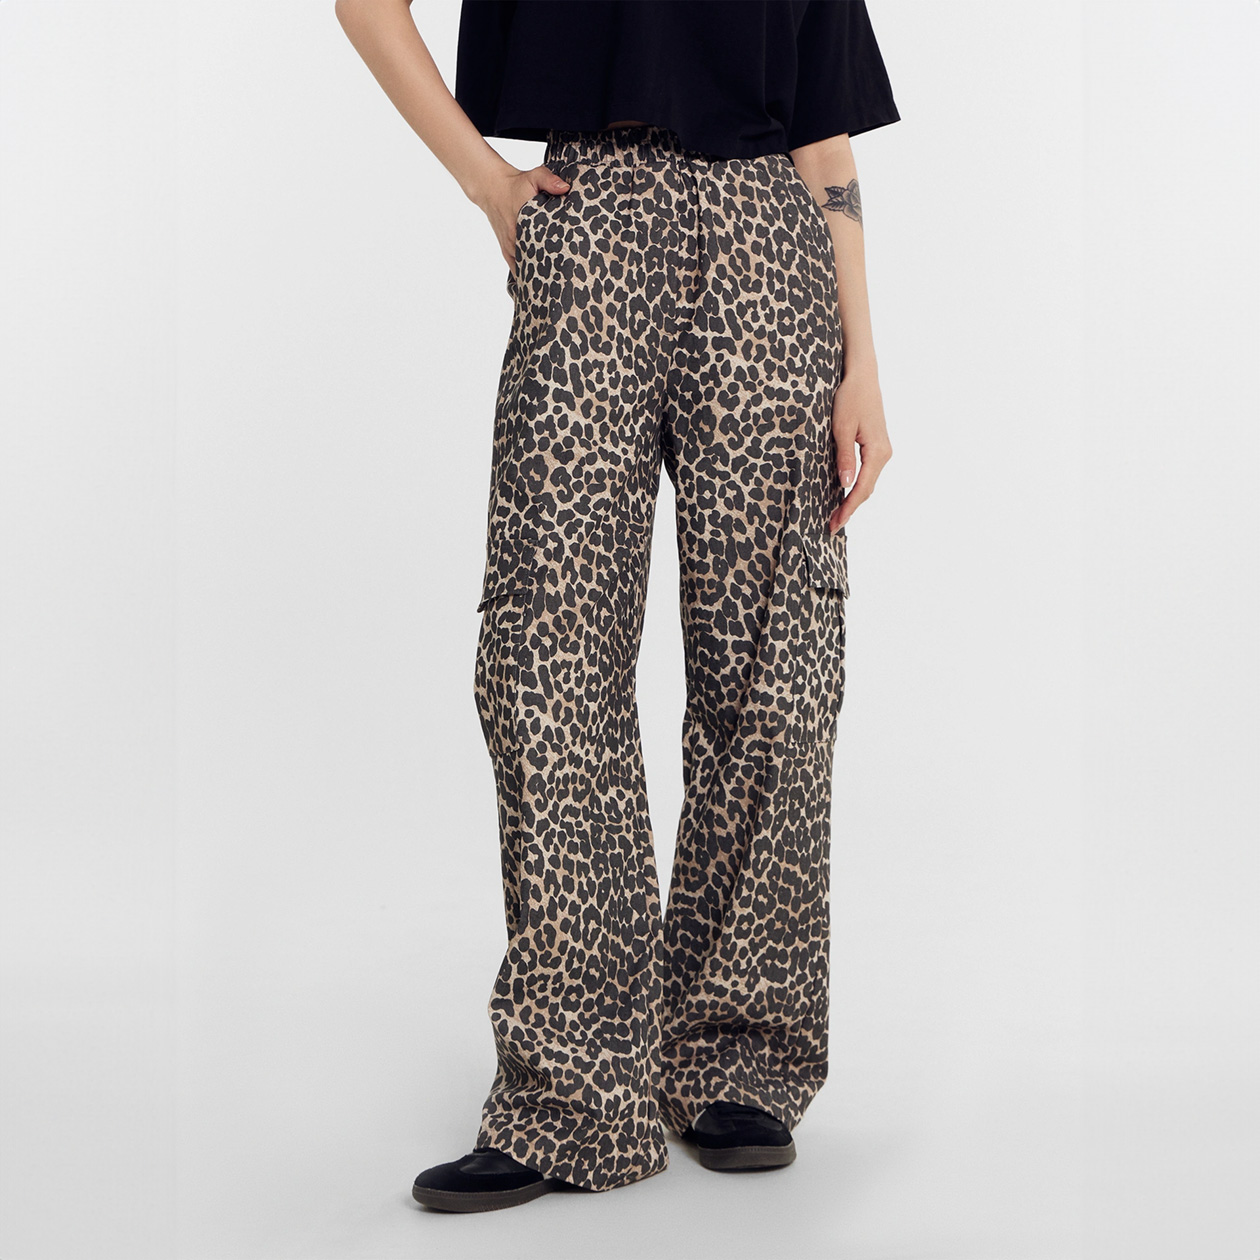 Леопардовые брюки. Цена: 2999 ₽